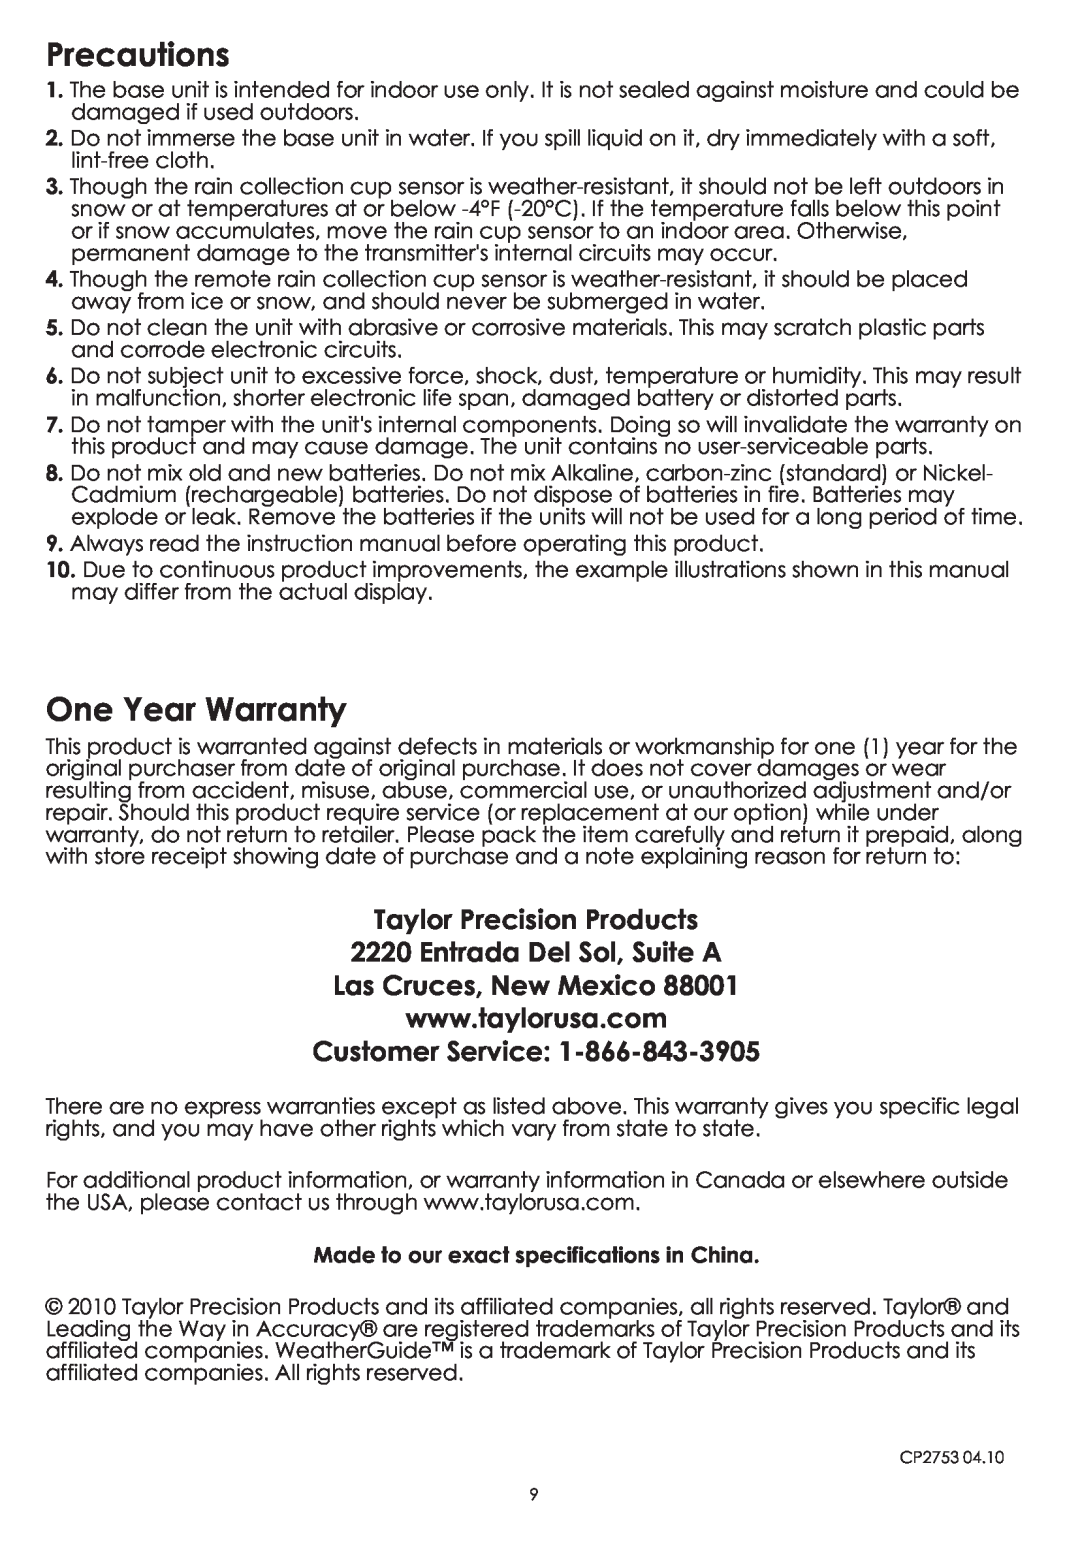 Taylor 2753 Precautions, One Year Warranty, Taylor Precision Products 2220 Entrada Del Sol, Suite A, Customer Service 